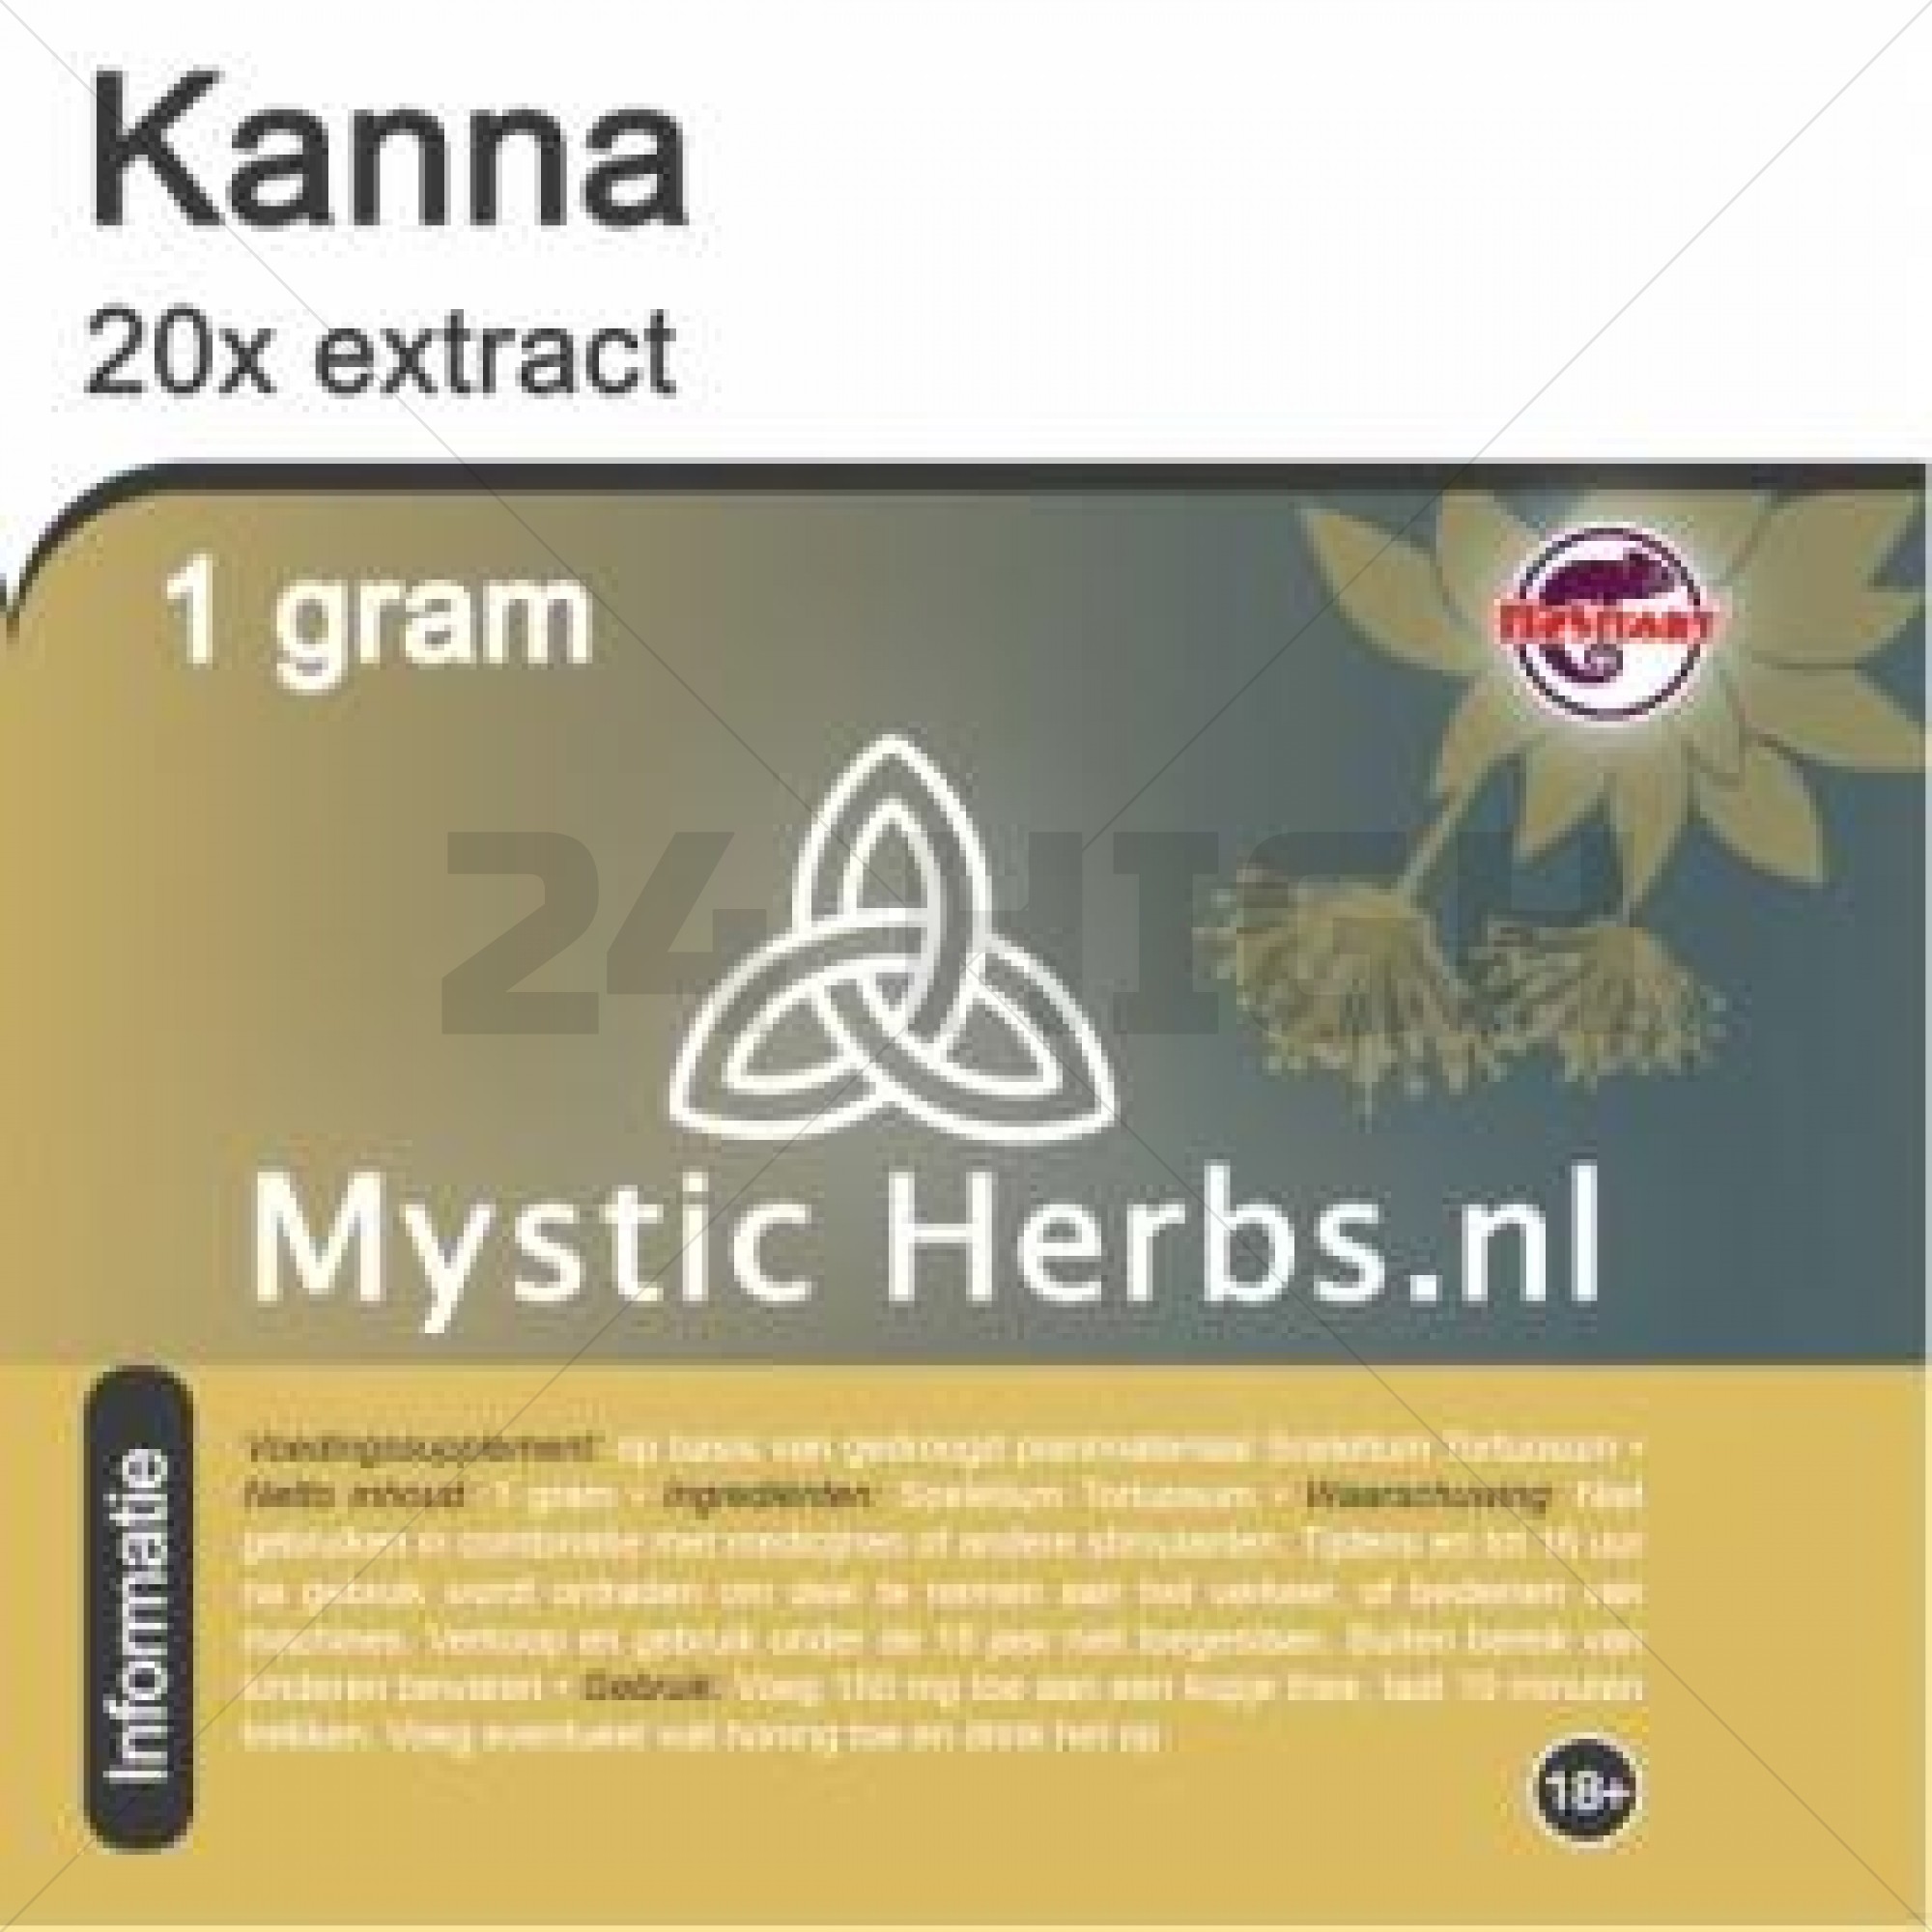 Kanna 20x Extract 